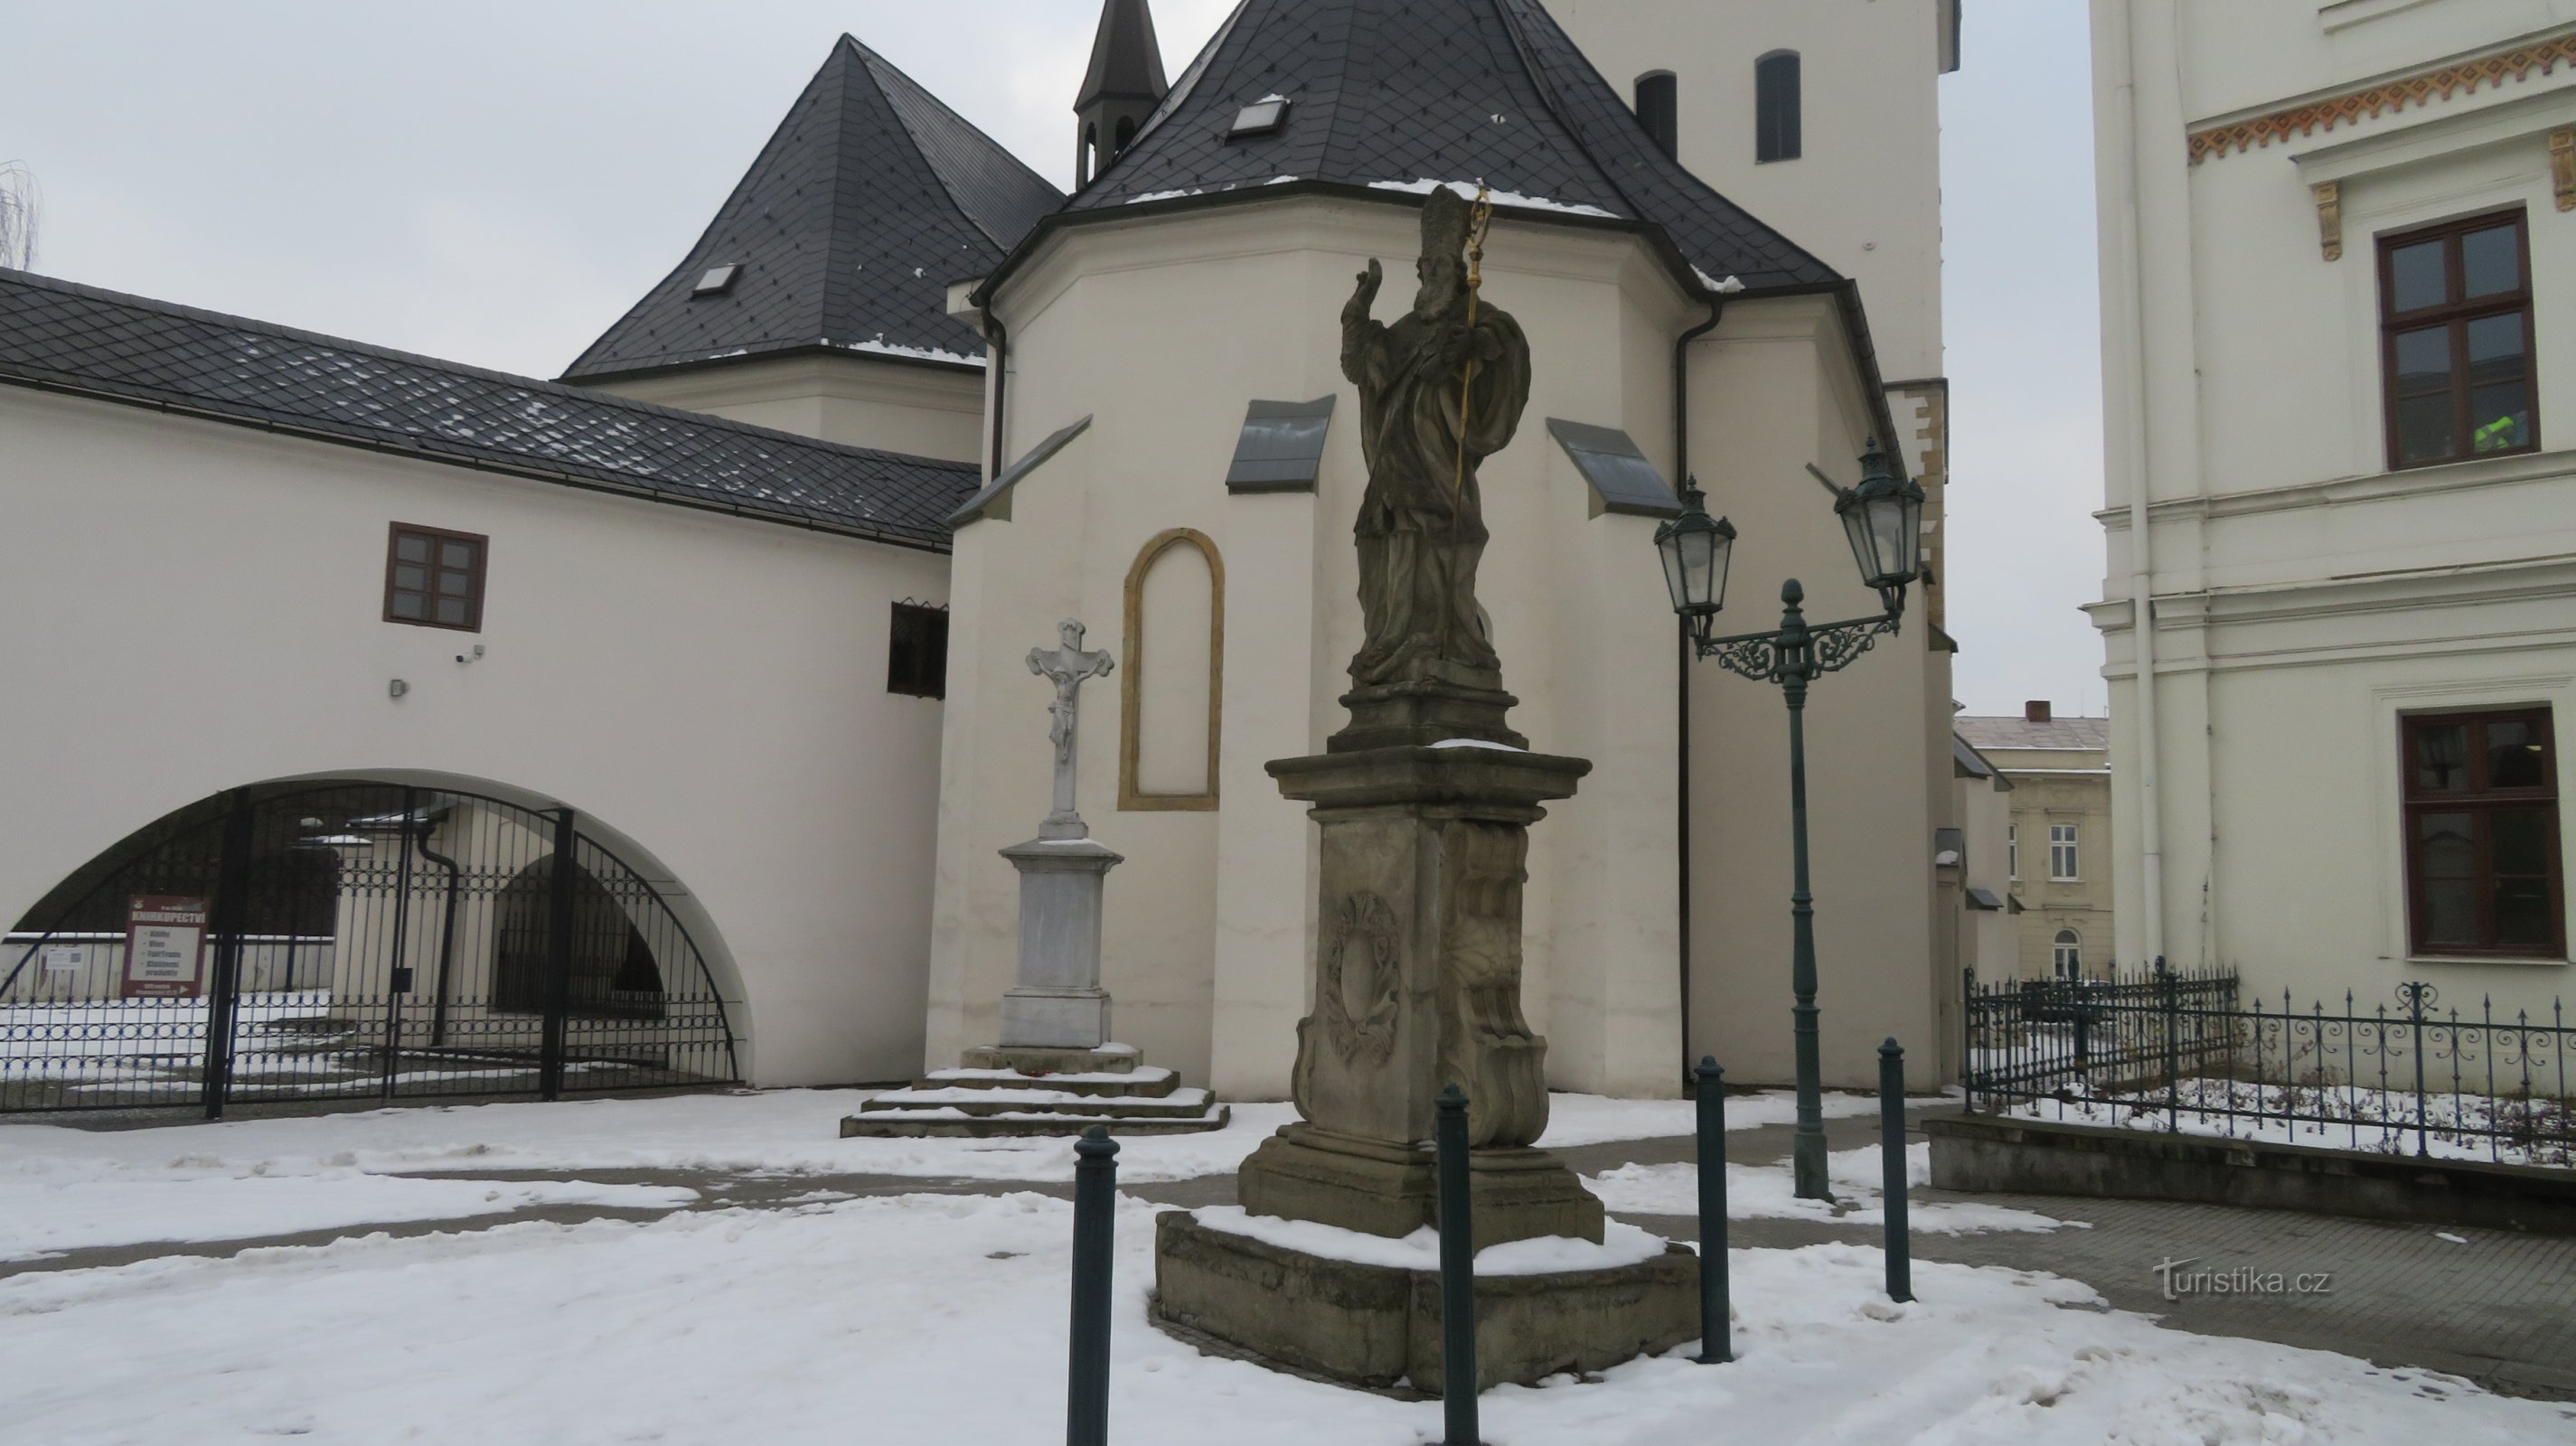 Karviná - as duas únicas estátuas de St. Patrick na República Tcheca